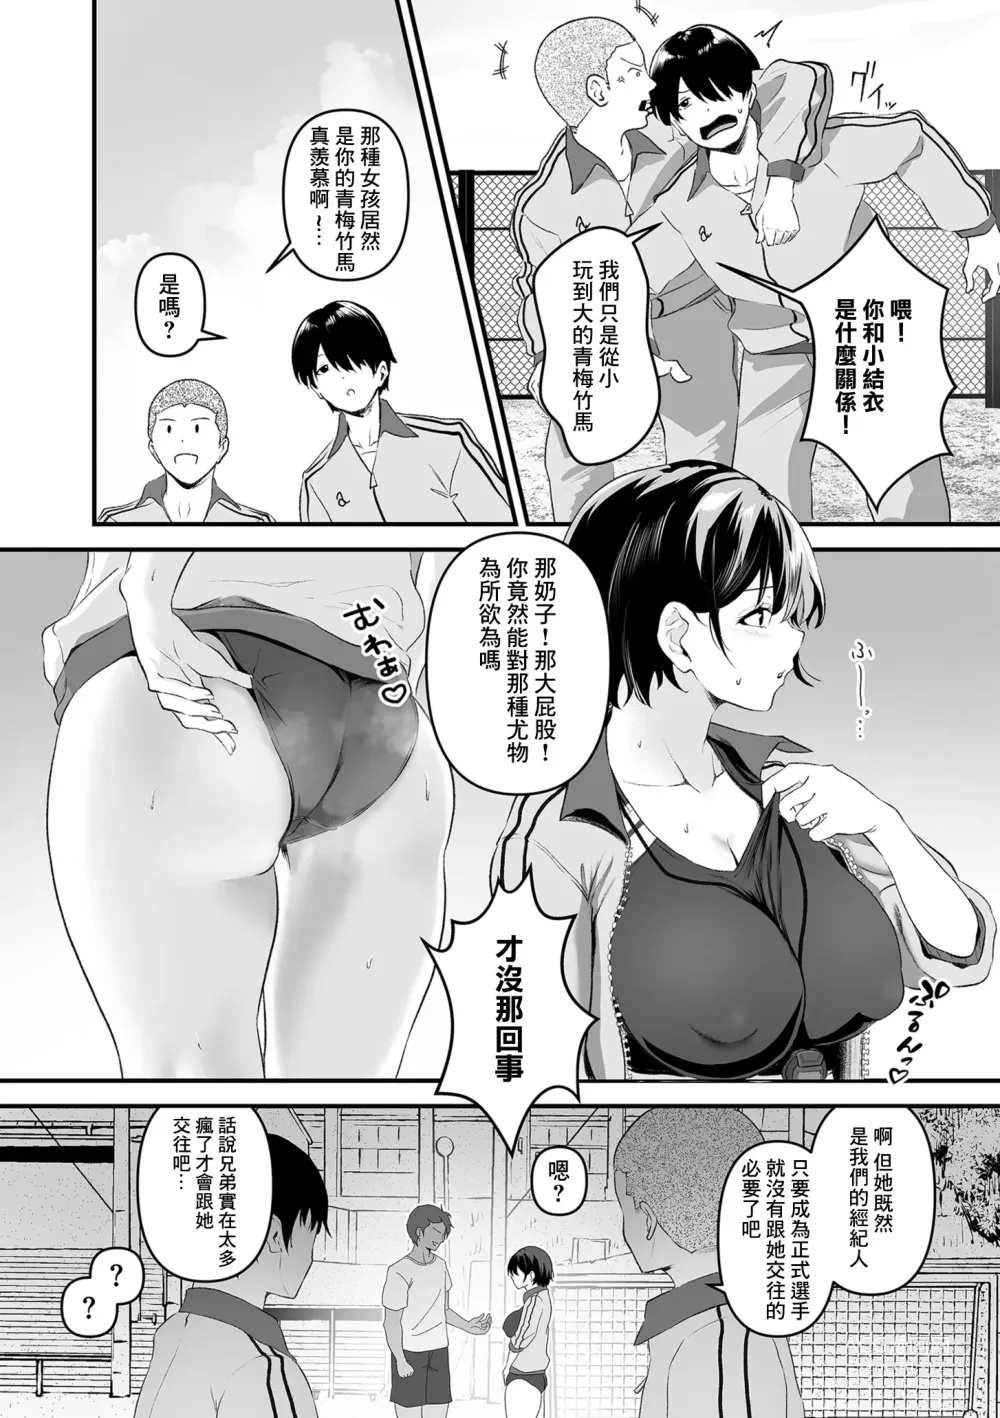 Page 2 of manga 集訓手淫對象